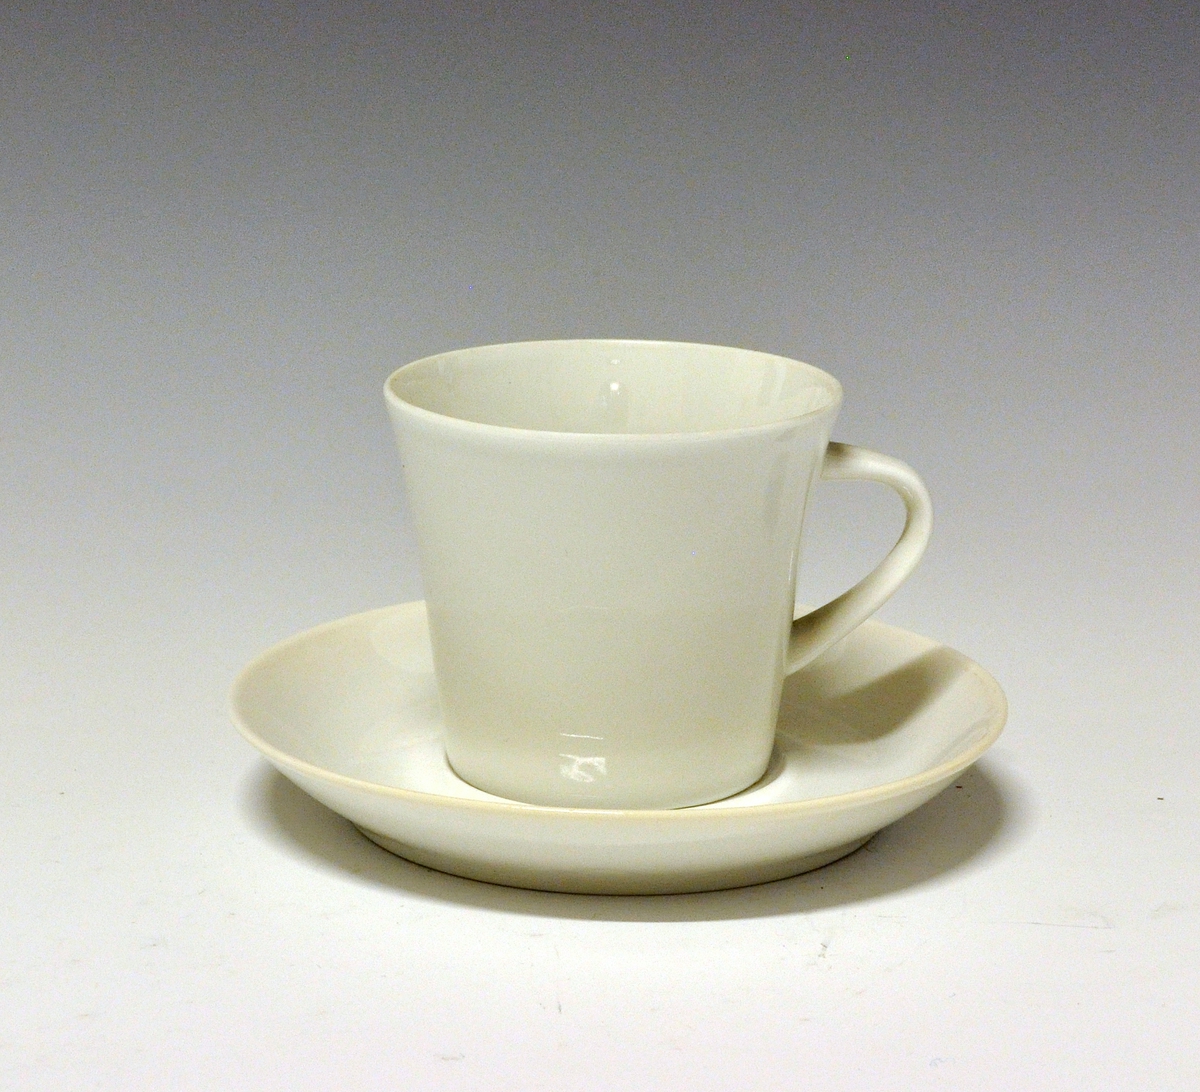 Kaffeskål av porselen. Formgitt av Anne Marie Ødegaard. I produksjon fra 1957.
Modell: Ceylon